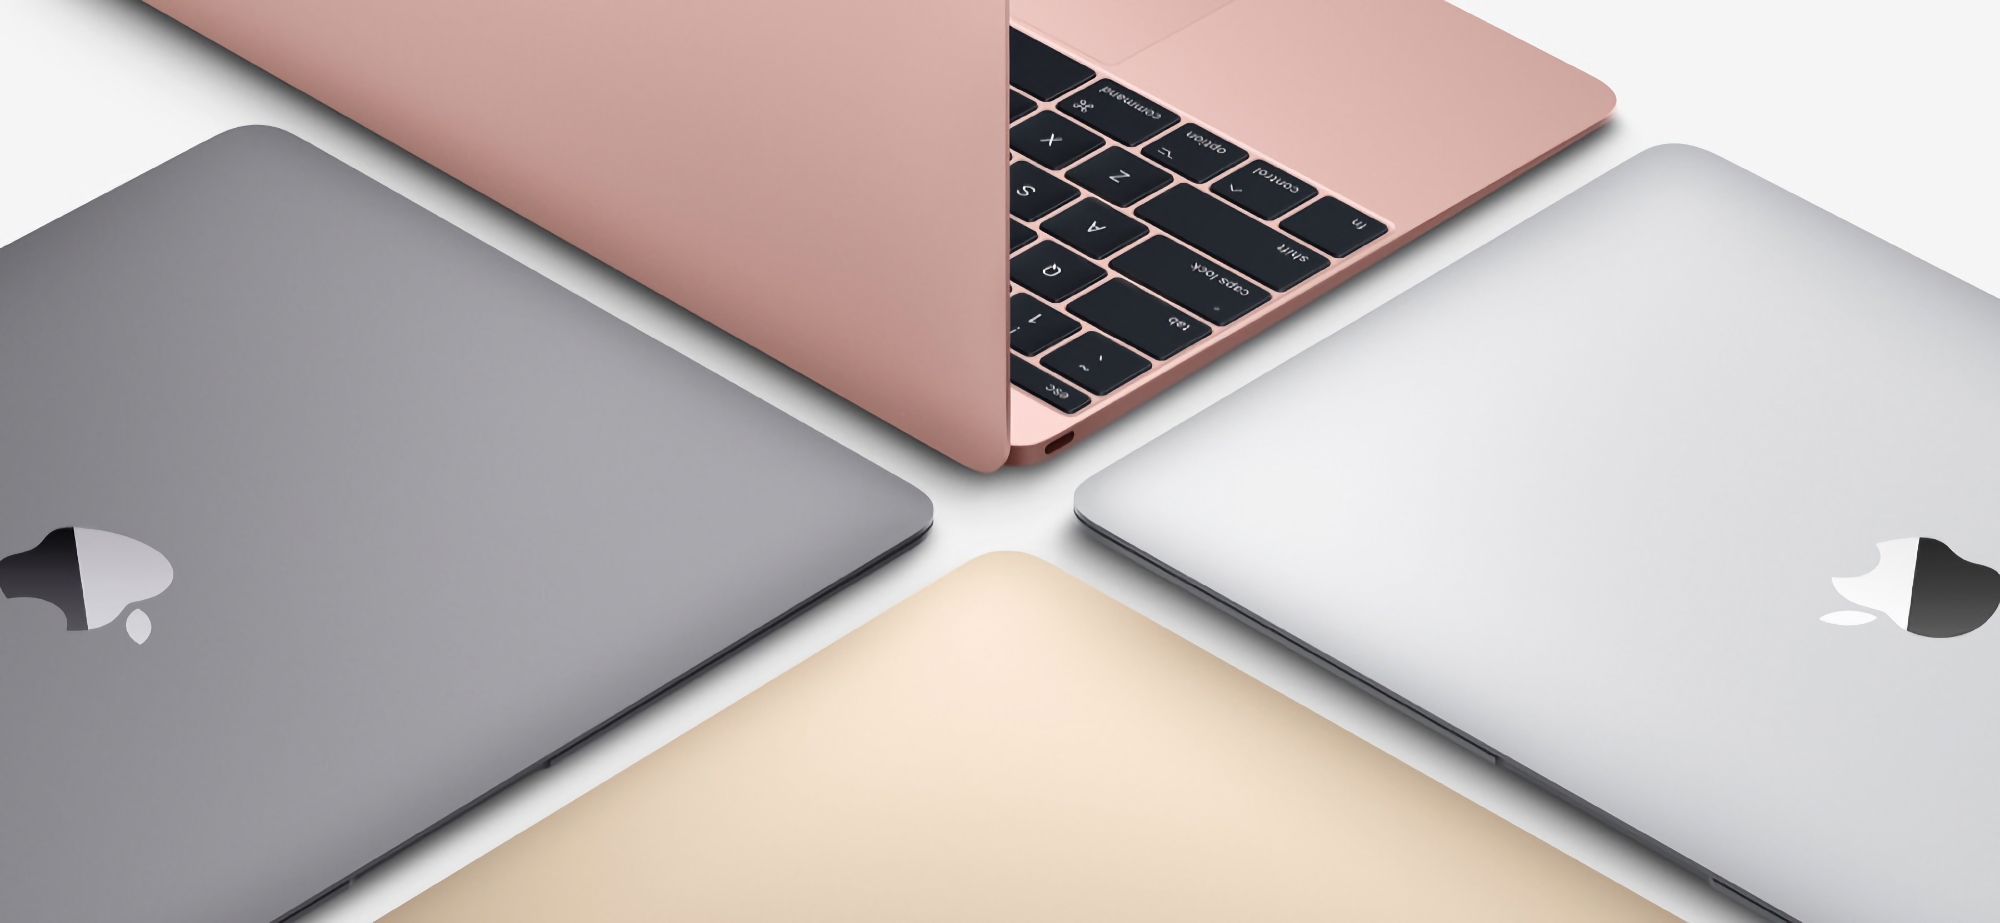 Чутки: Apple працює над бюджетним MacBook, новинка вийде на ринок у двох версіях і коштуватиме близько $700